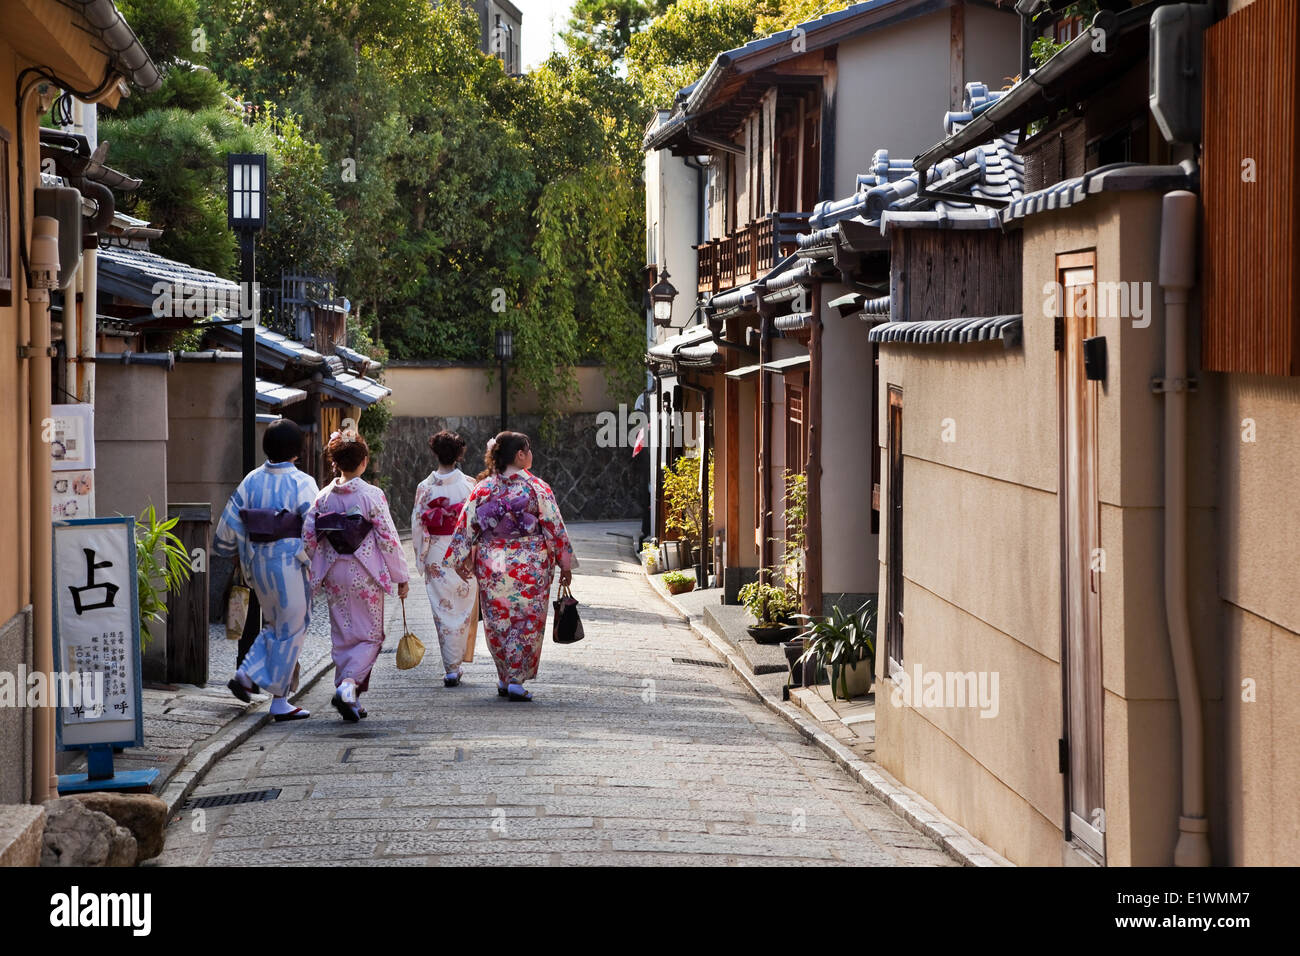 Cuatro mujeres japonesas paseando por un callejón, vistiendo yukatas, Distrito Higashiyama de Kyoto, Japón Foto de stock